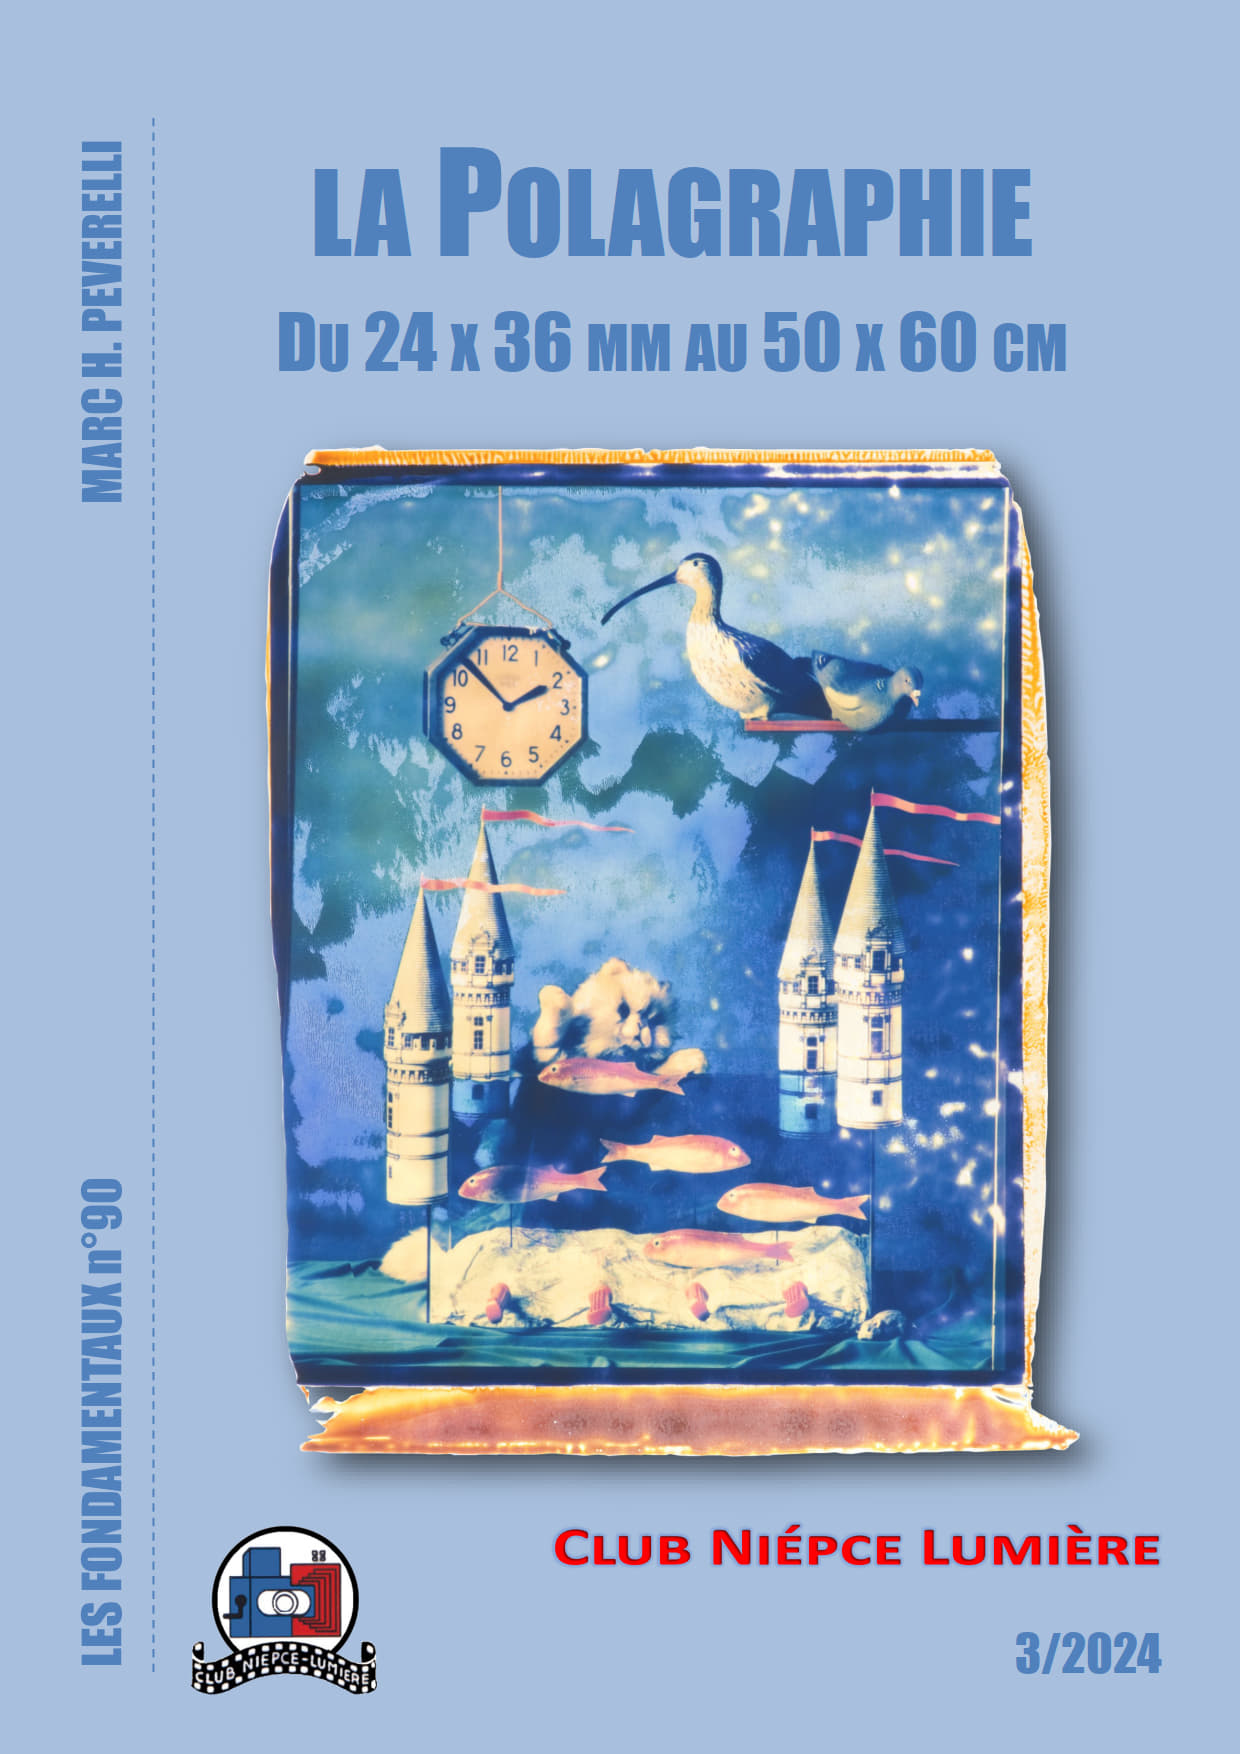 Les Fondamentaux 90 - La Polagraphie du 24x36 mm au 50 x 60 mm